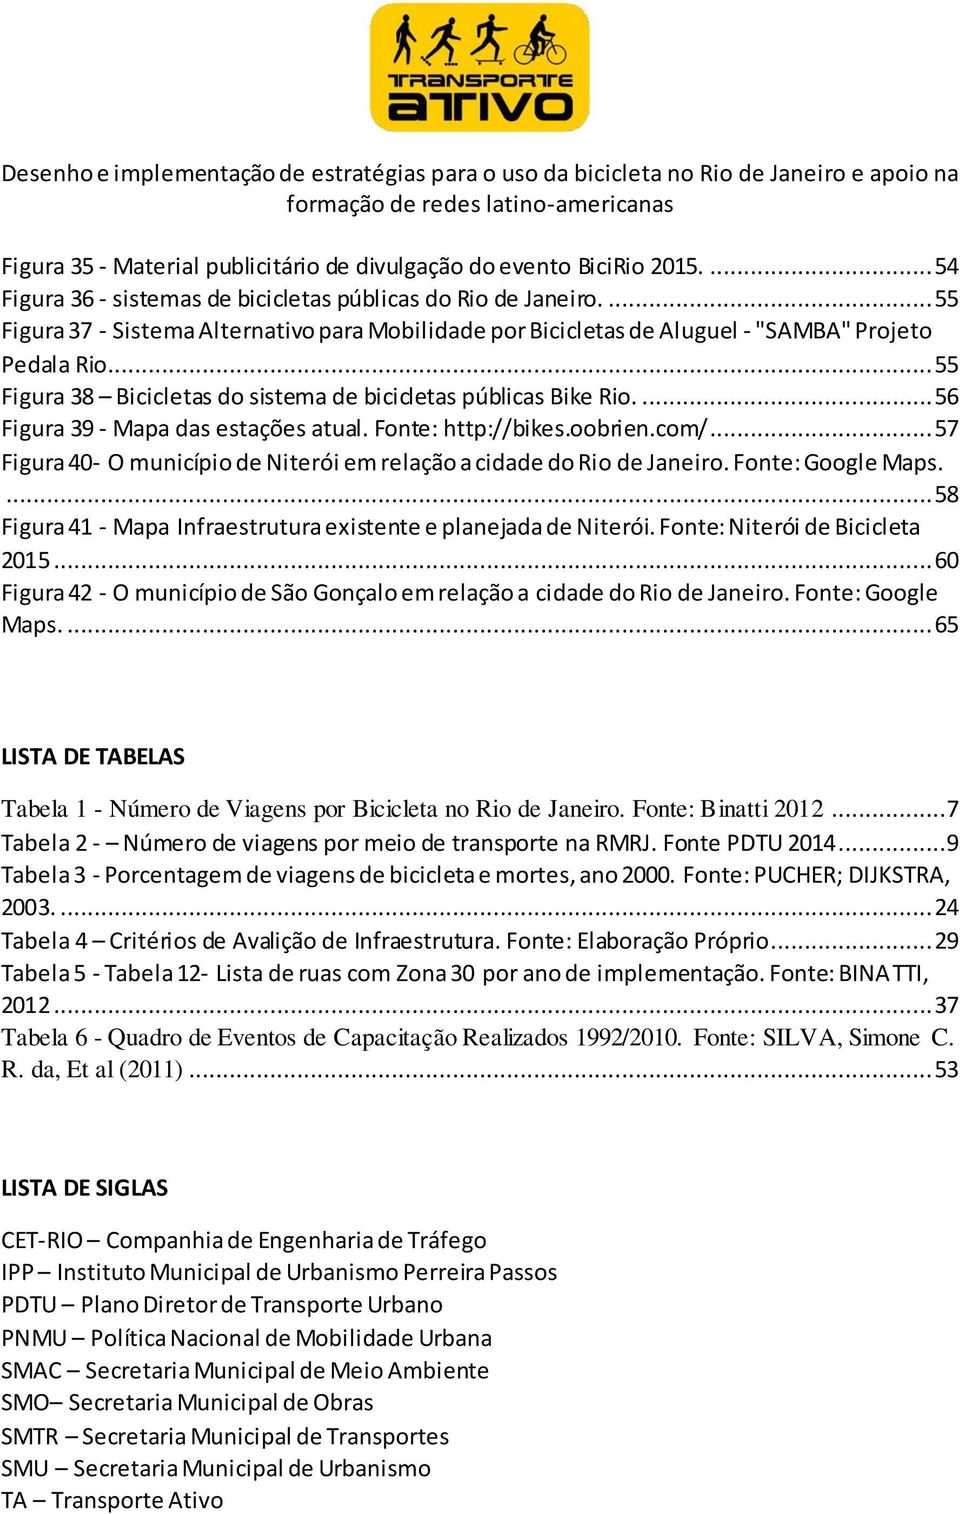 ... 56 Figura 39 - Mapa das estações atual. Fonte: http://bikes.oobrien.com/... 57 Figura 40- O município de Niterói em relação a cidade do Rio de Janeiro. Fonte: Google Maps.